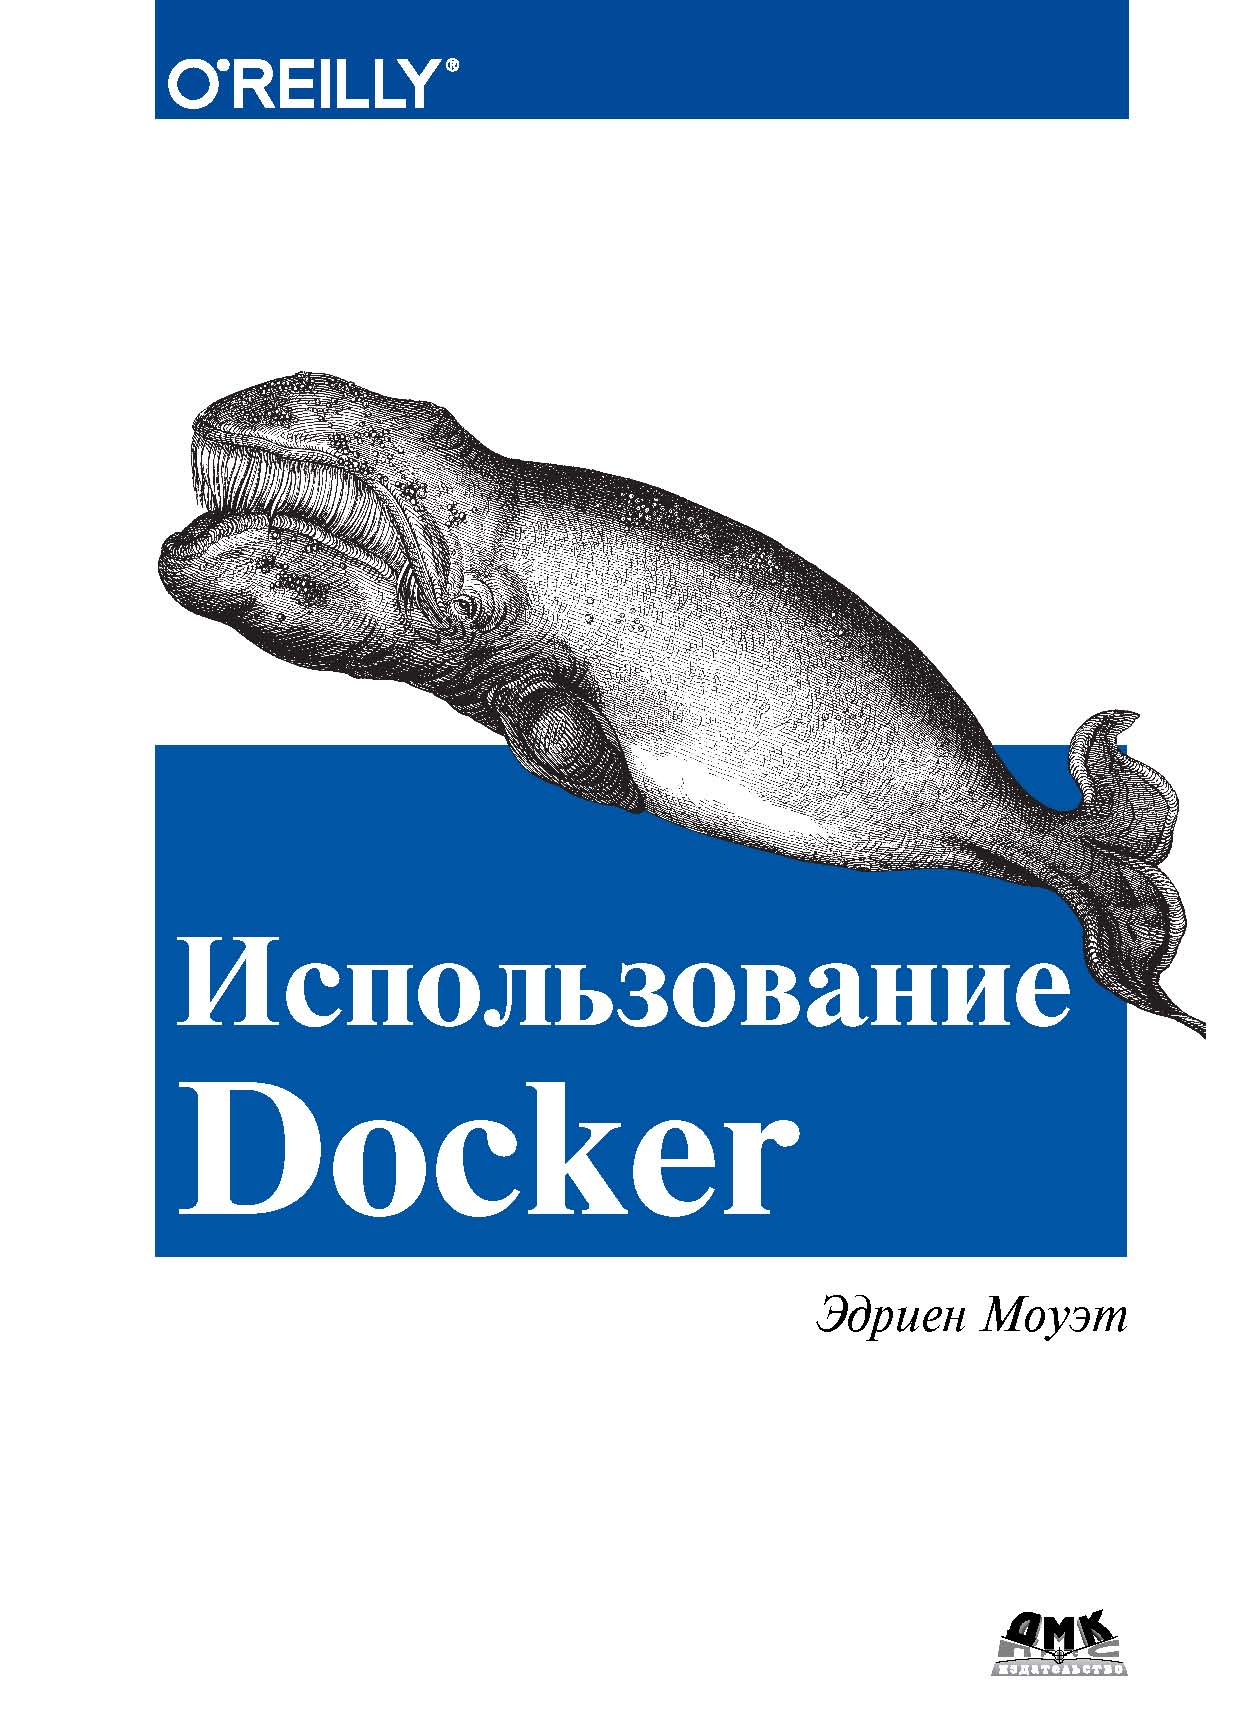 Книга  Использование Docker созданная Эдриен Моуэт, А. В. Снастин может относится к жанру зарубежная компьютерная литература, программы. Стоимость электронной книги Использование Docker с идентификатором 44336399 составляет 649.00 руб.